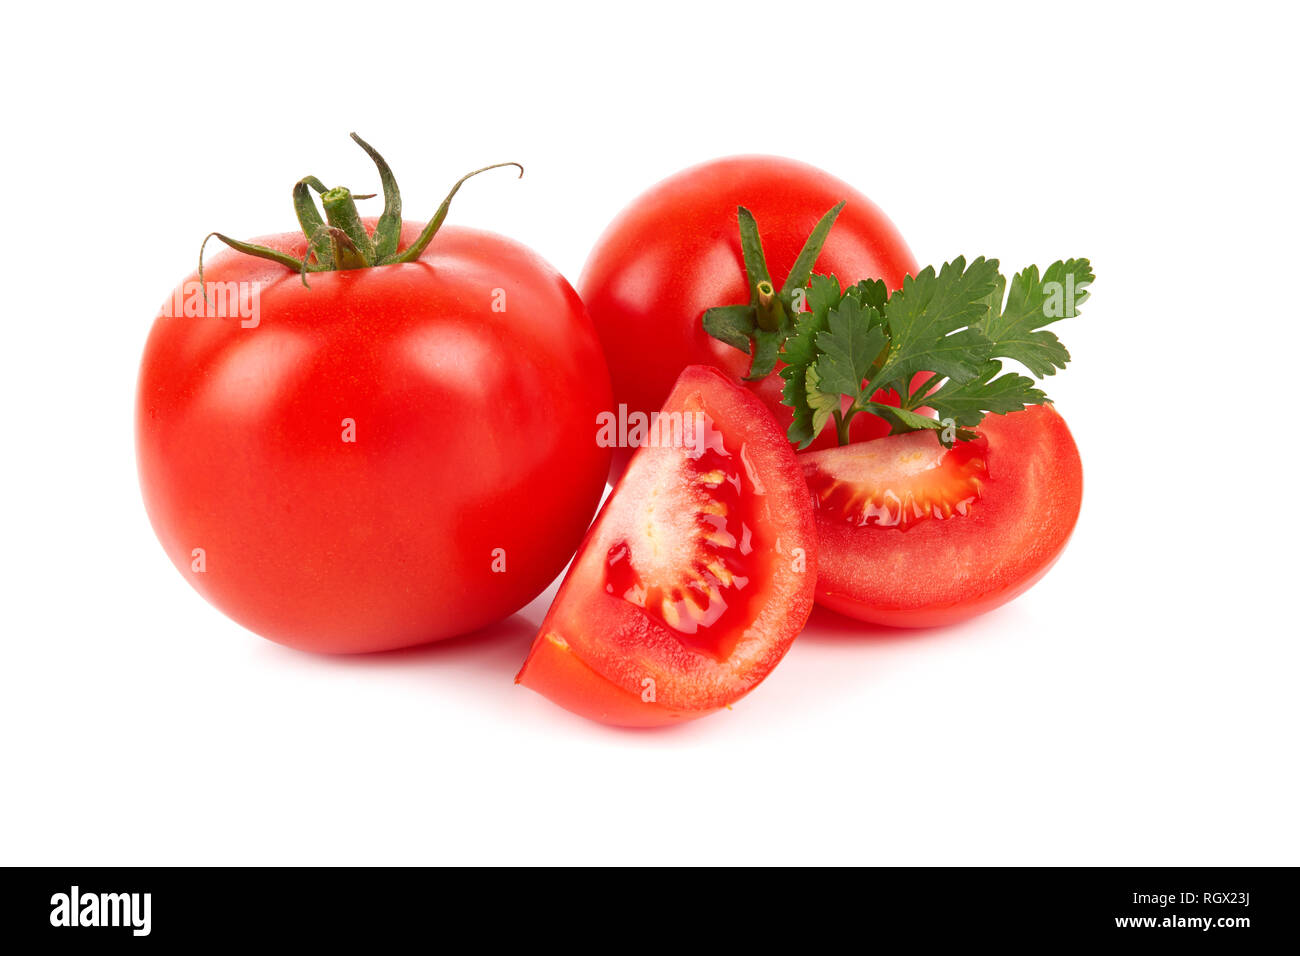 Pile of fresh tomatoes isolated on white background Stock Photo